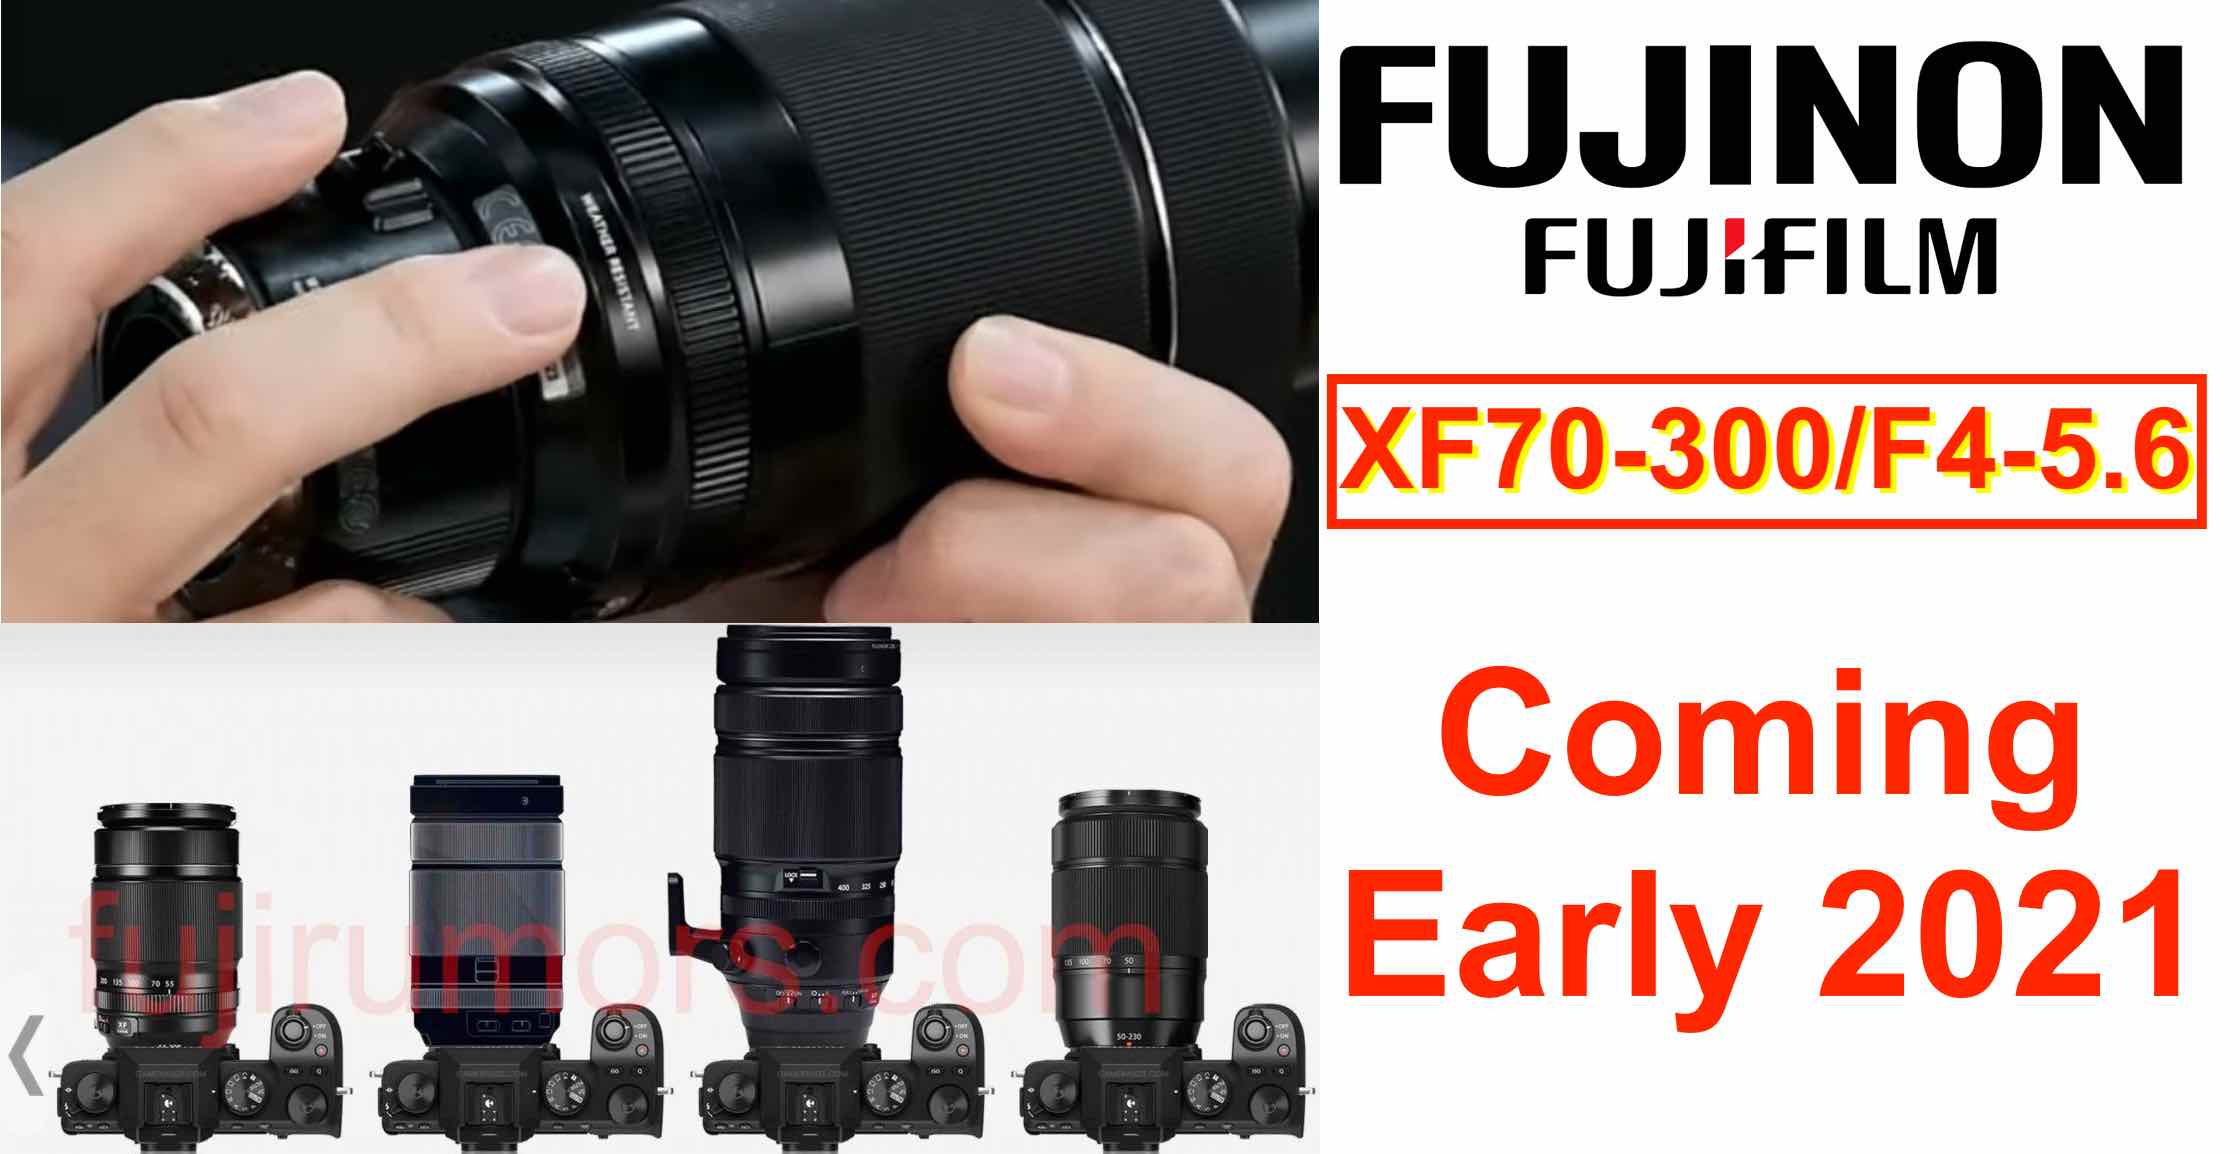 BREAKING: Fujinon XF F4-5.6 Coming Early 2021 - Fuji Rumors